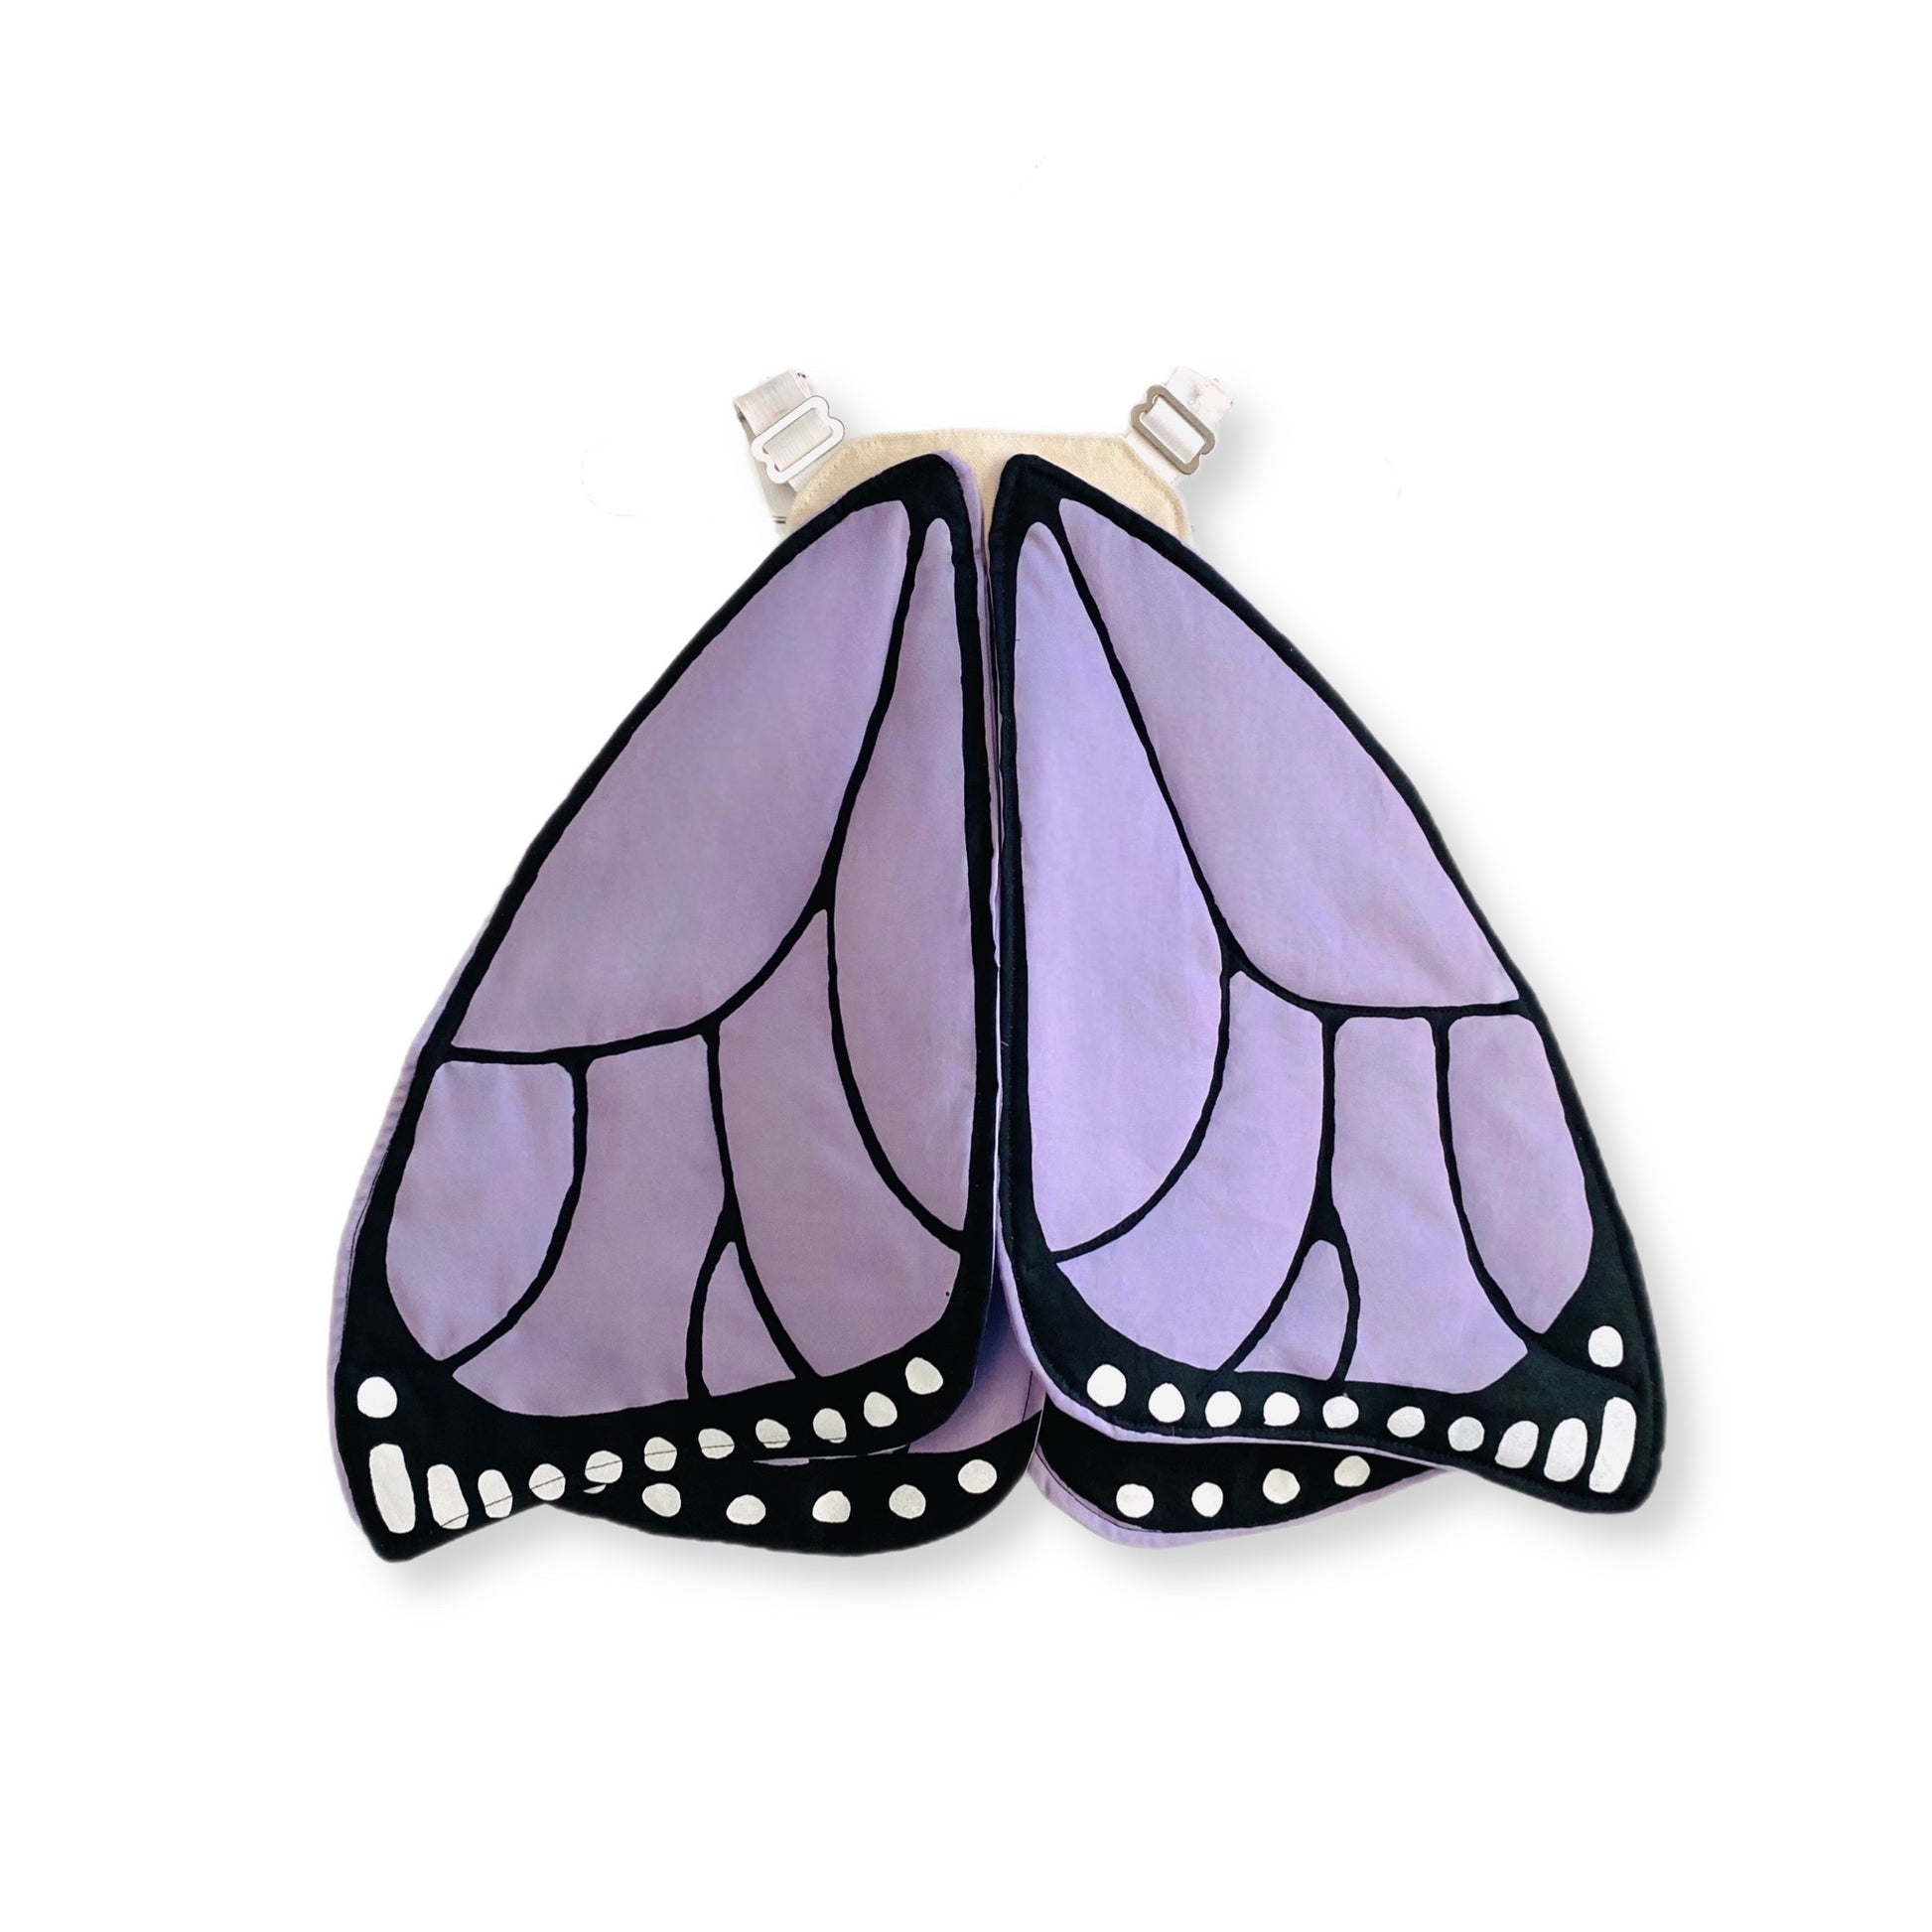 purple butterfly wings costume